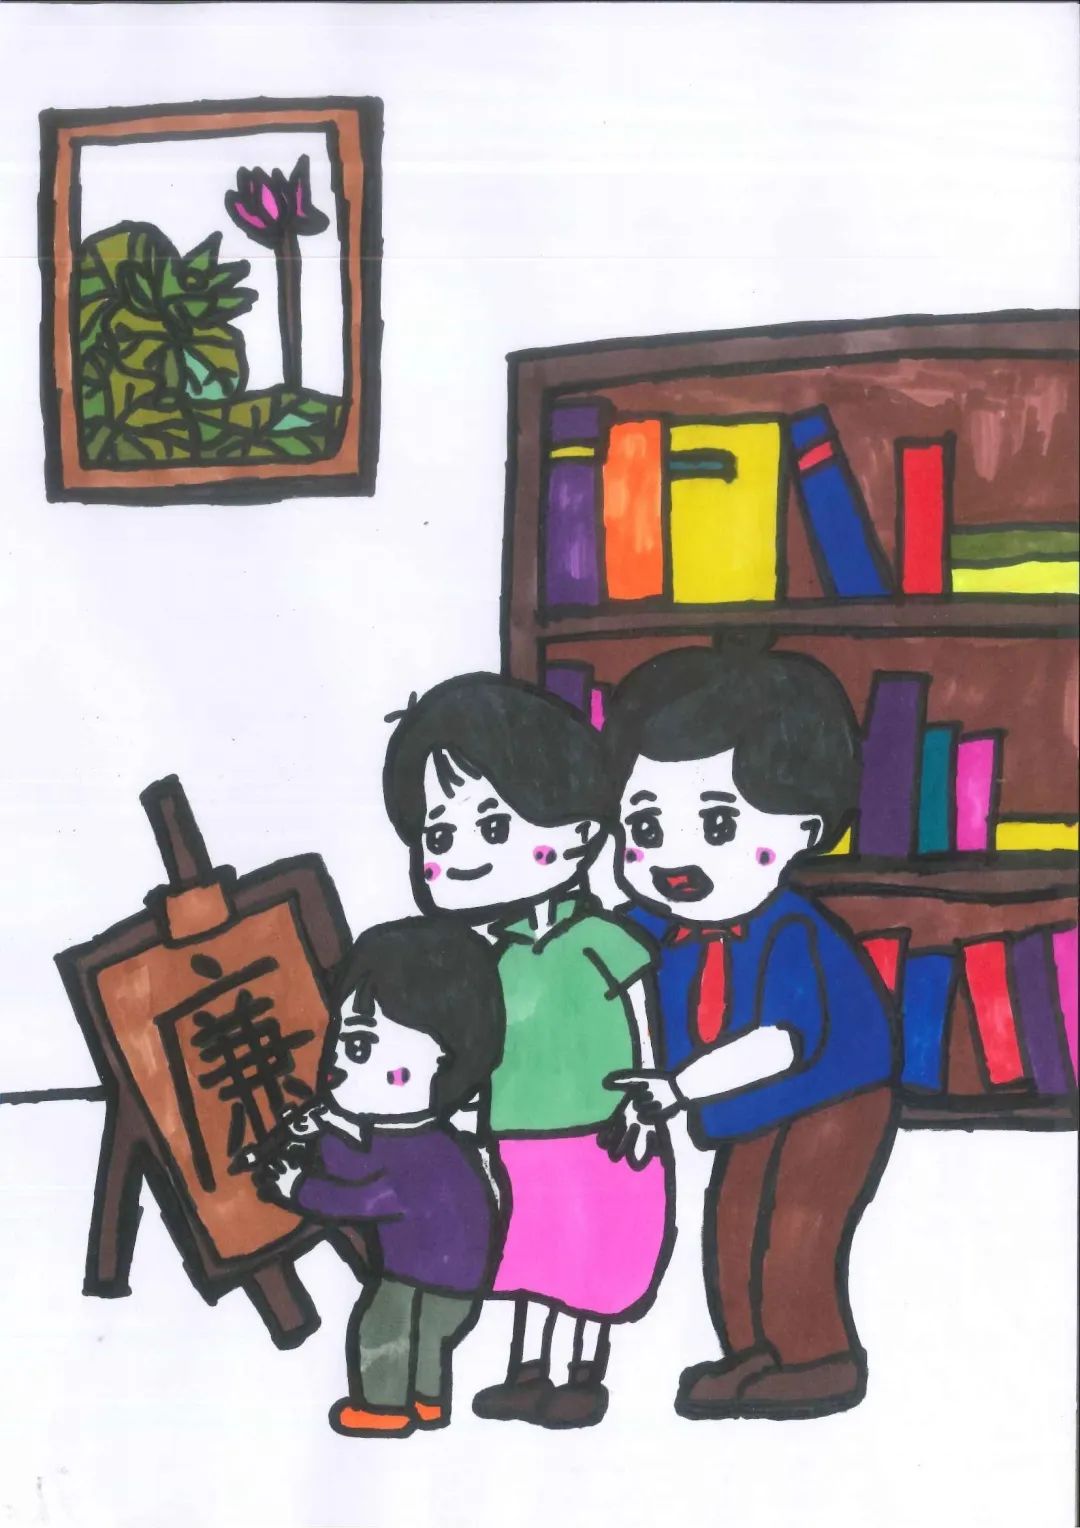 日前,江汉区妇联面向社会公开征集清廉家庭主题漫画作品,得到了广大